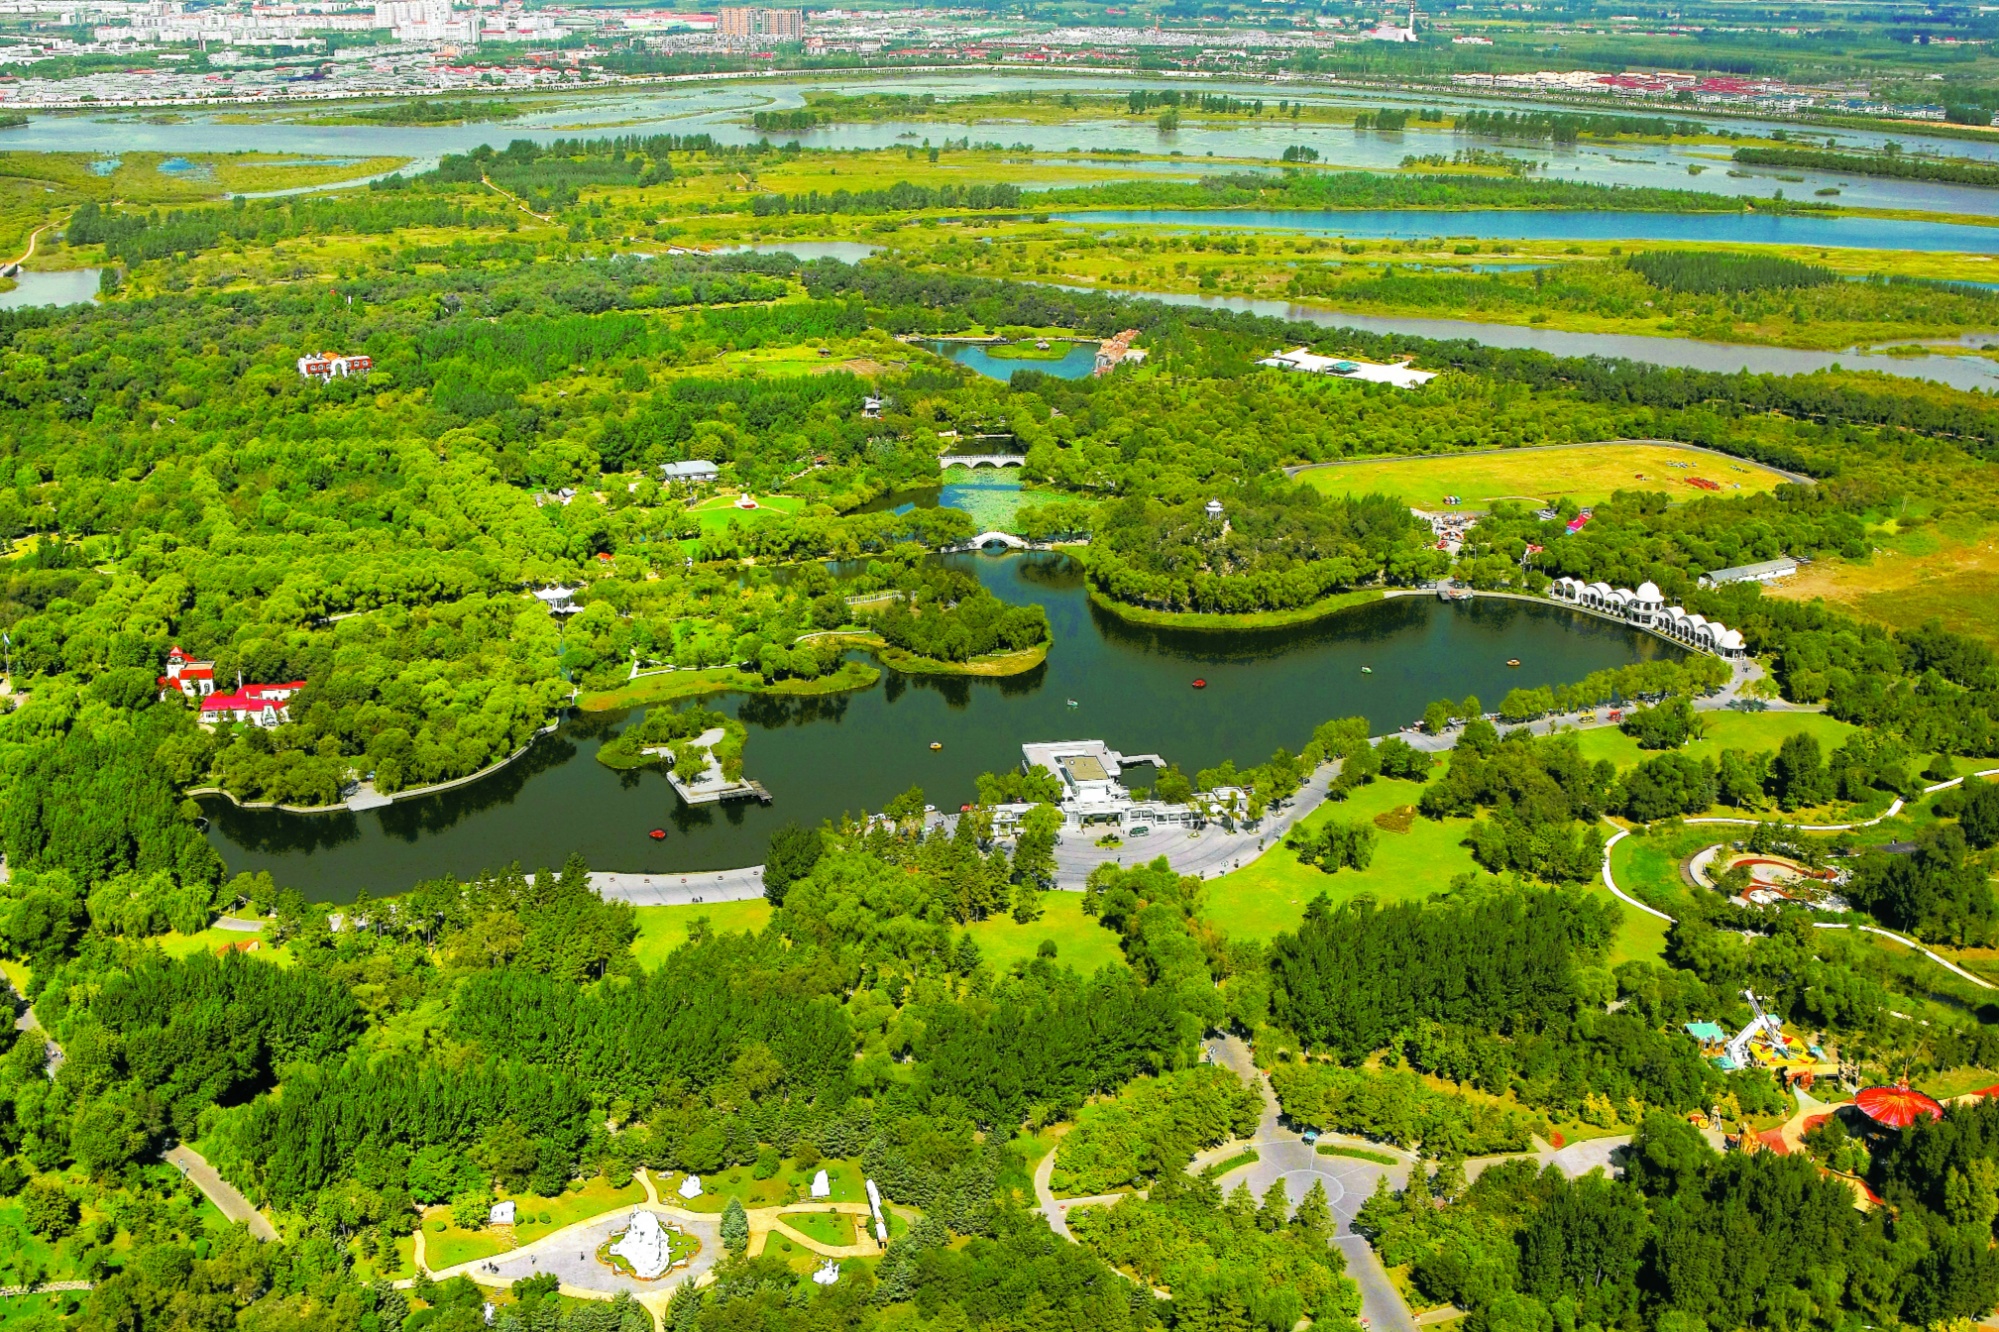 太阳岛公园 - 哈尔滨景点 - 华侨城旅游网